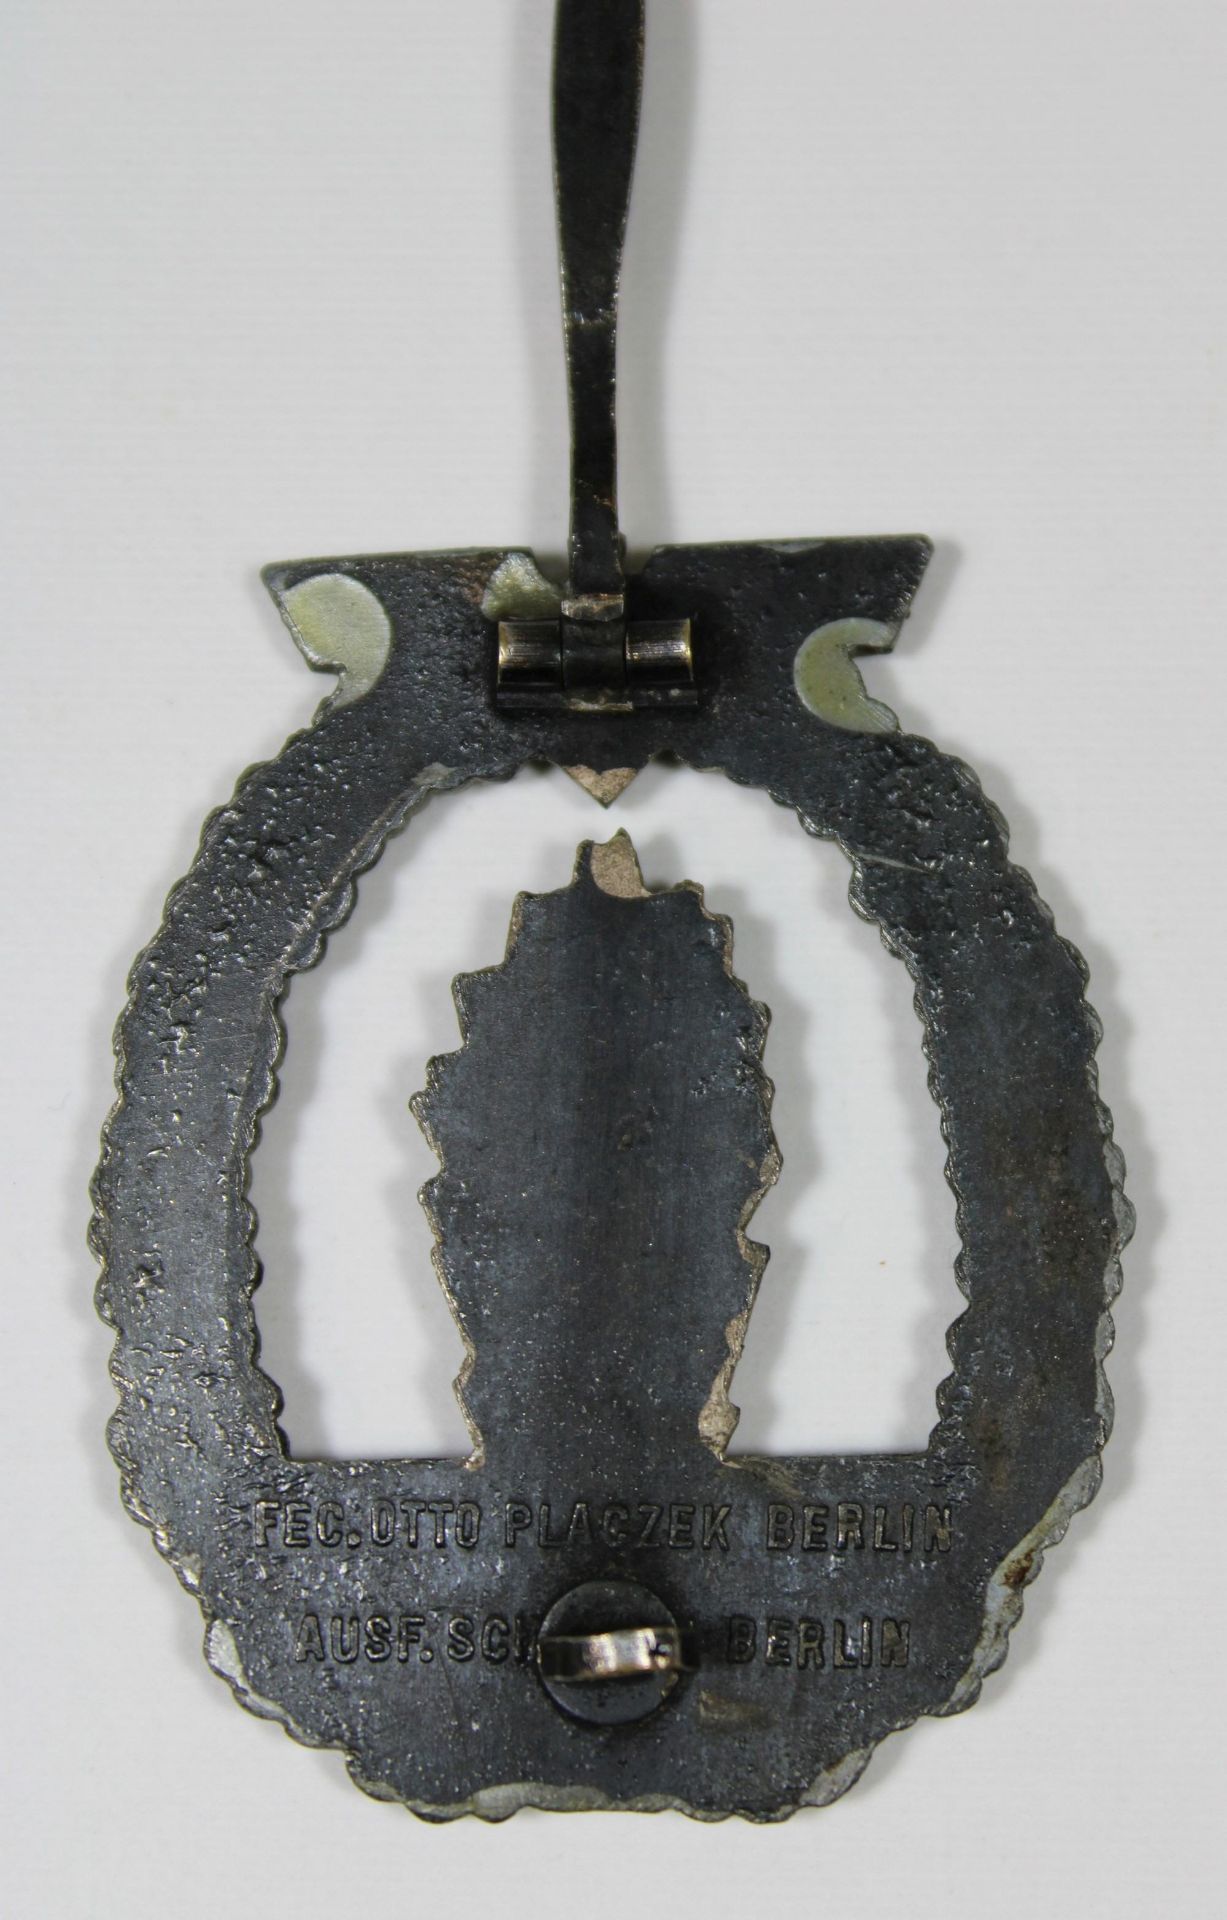 Minensucherkriegsabzeichen, Buntmetall, Ruckseite: massiv, Markierung des Herstellers: Fec.Otto Pla - Bild 2 aus 2